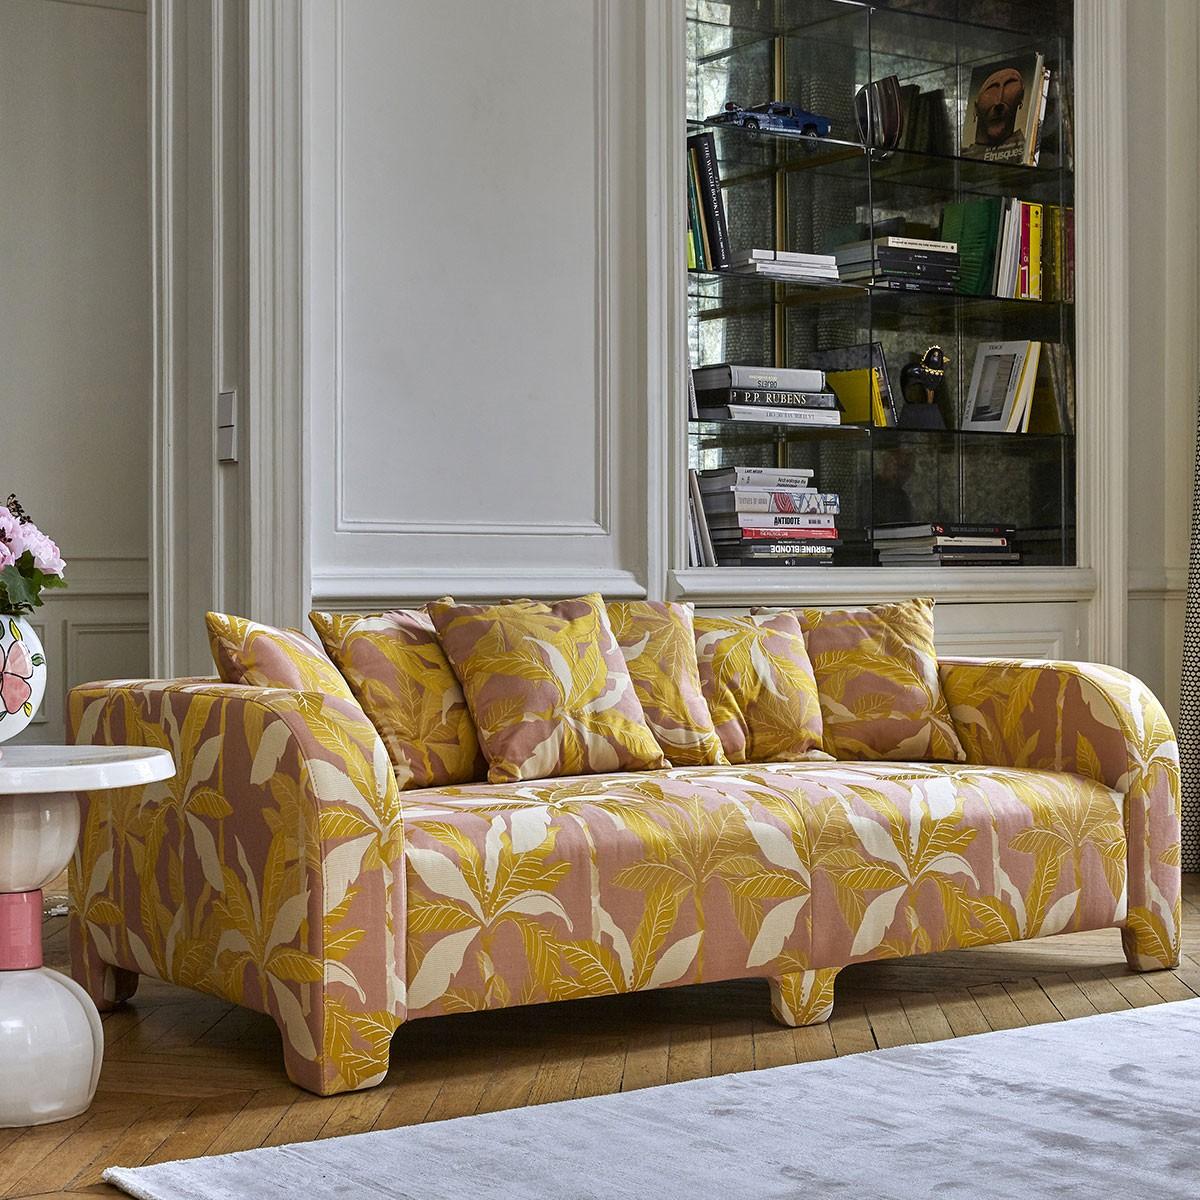 Popus Editions Graziella 2 Seater Sofa in Pink Miami Jacquard Fabric For Sale 1